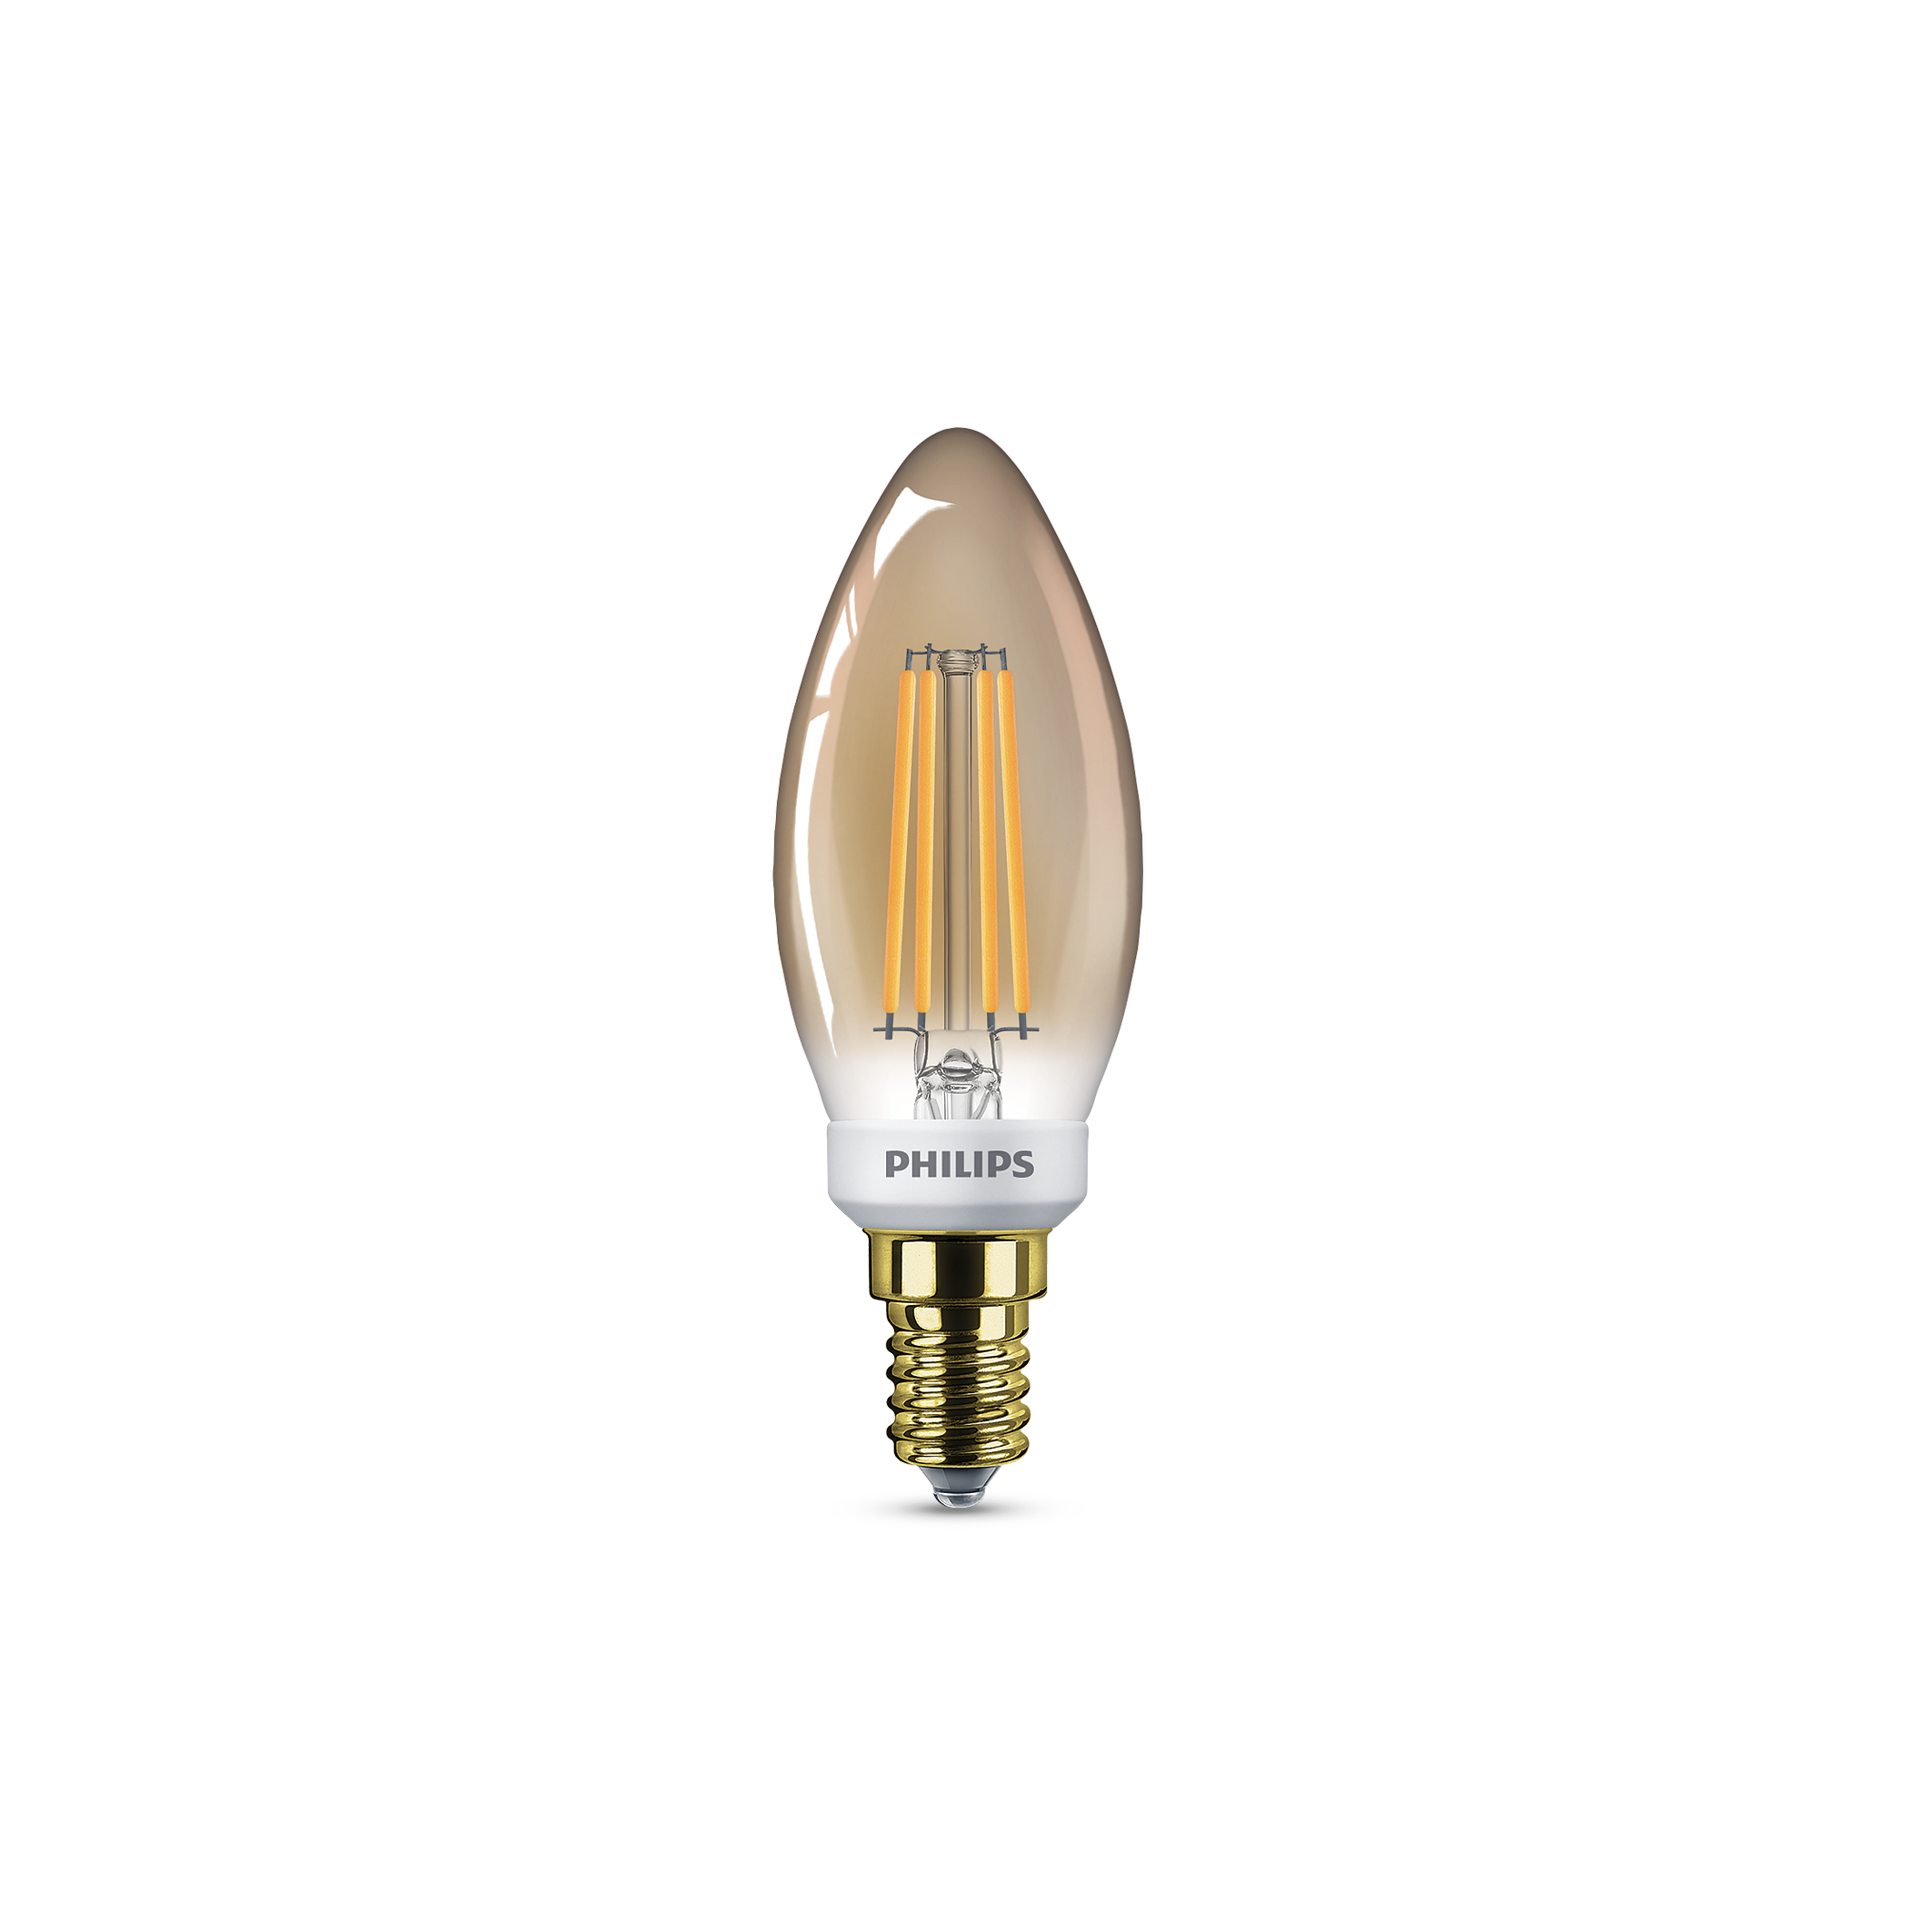 LED-kronljus och -klotlampor